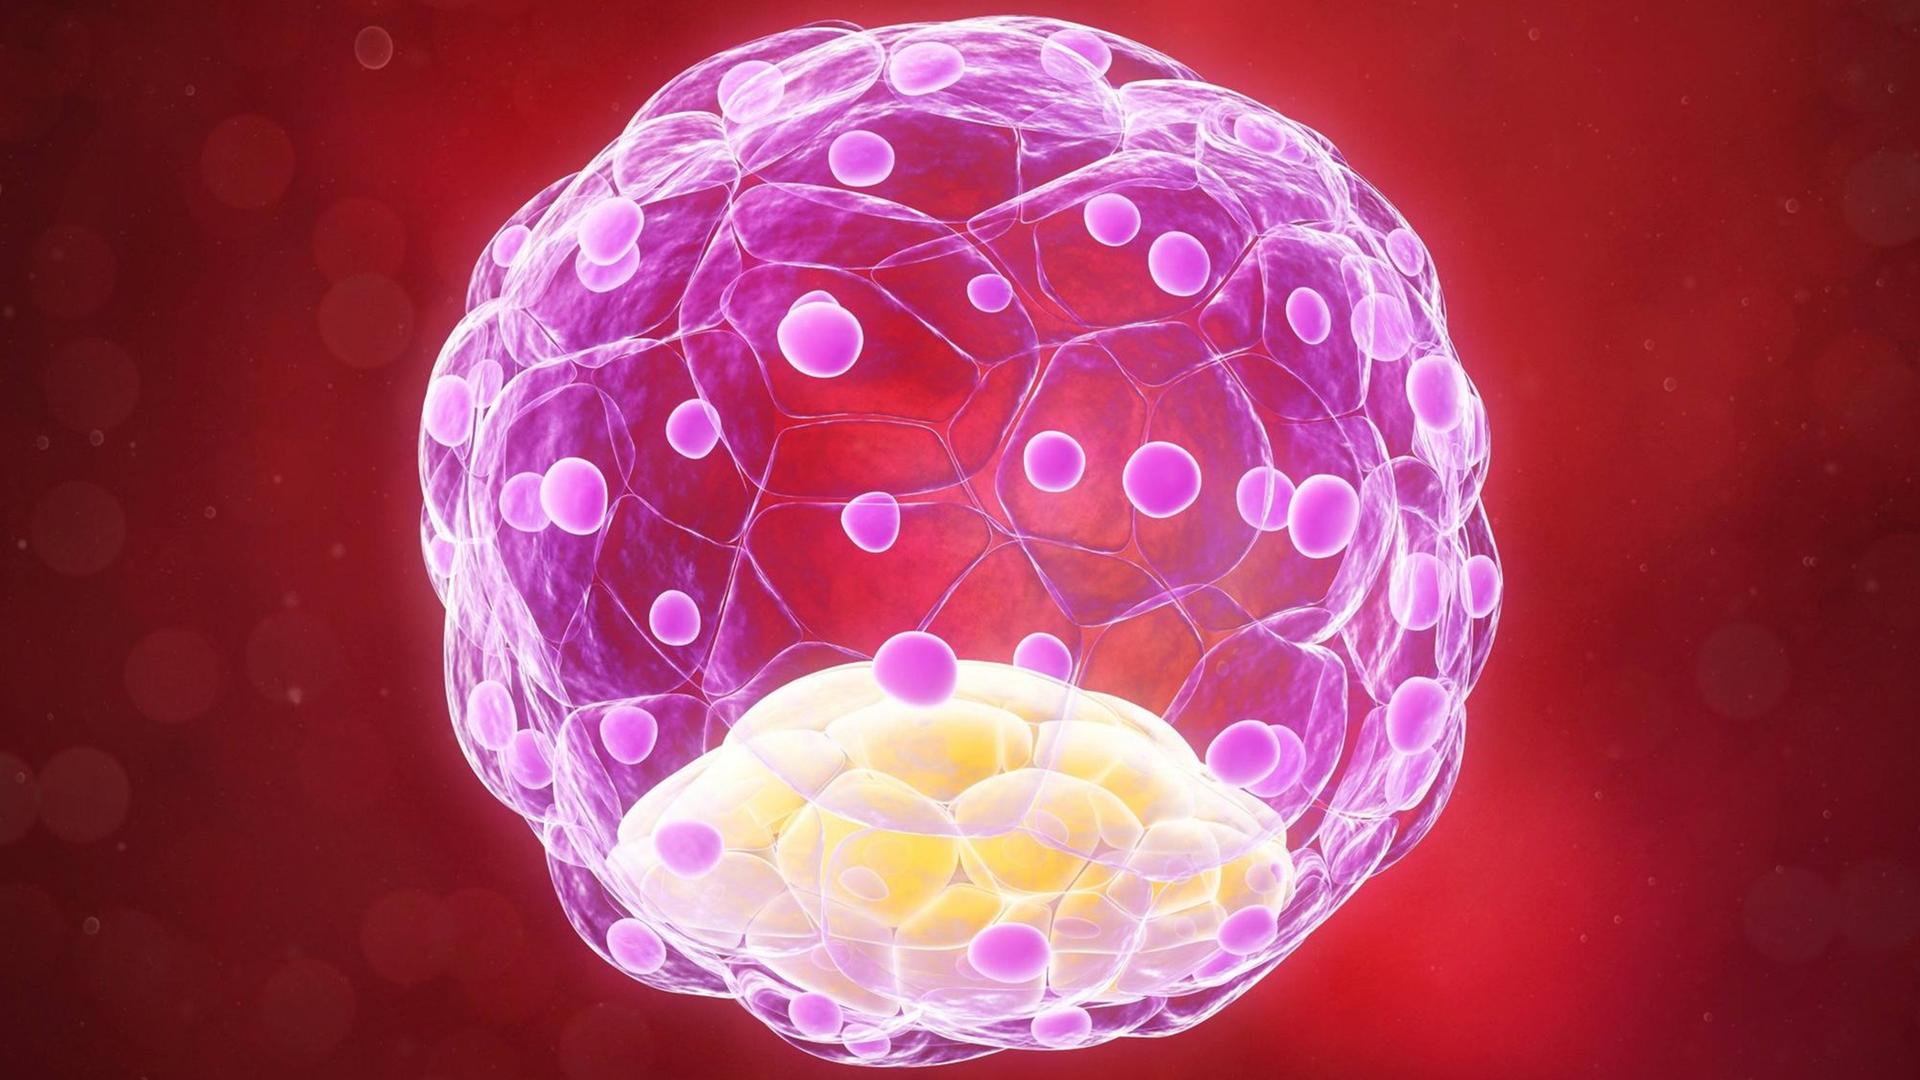 Blastozyste mit 58 Zellen (Computerillustration)